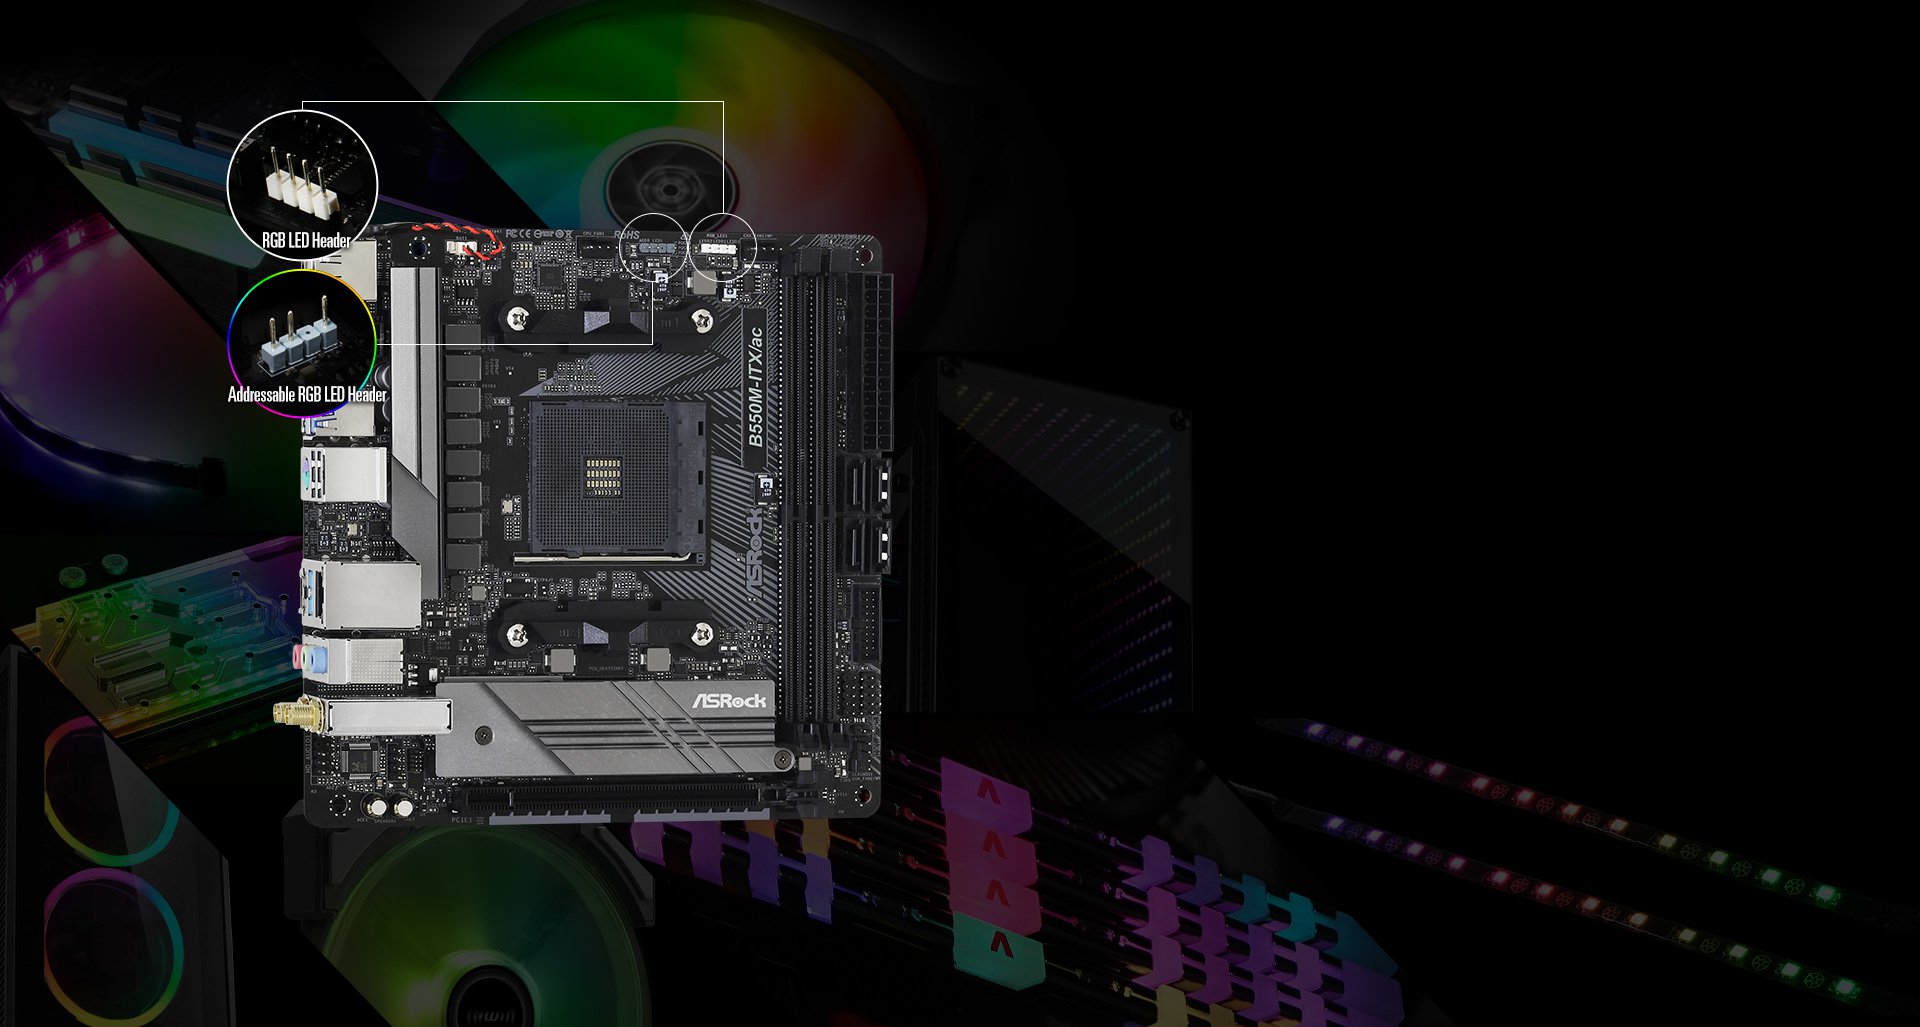 ASRock B550M-ITX/AC supporta la scheda madre AMD AM4 RyzenTM di terza generazione/Future AMD RyzenTM processori 